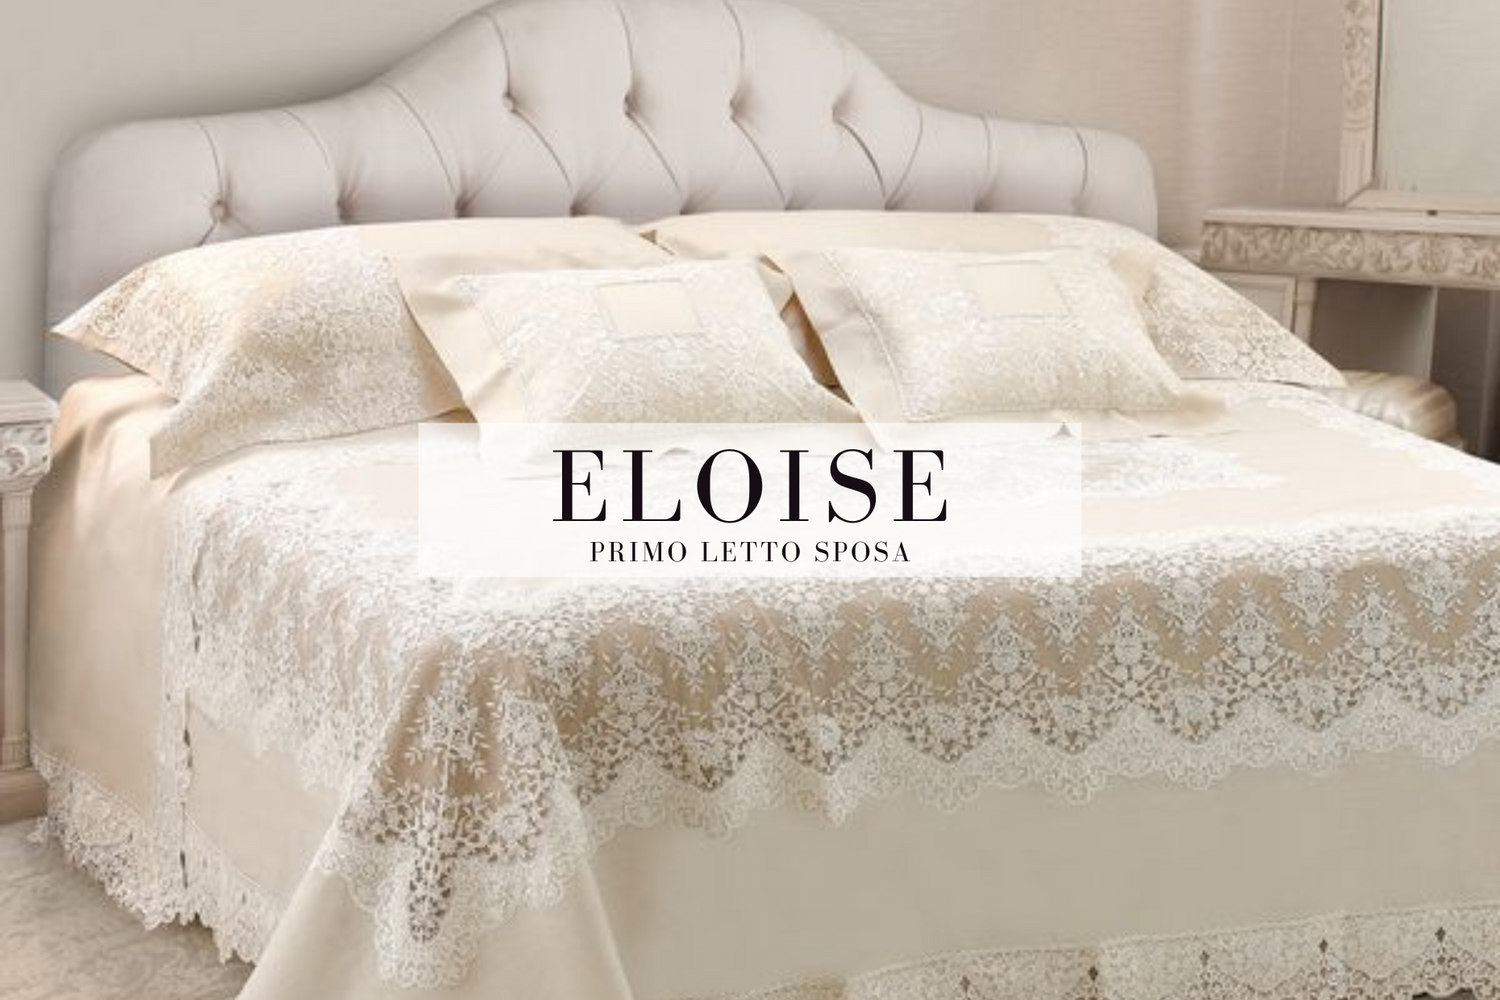 Eloise, primo letto sposa in lino realizzato artigianalmente in Italia